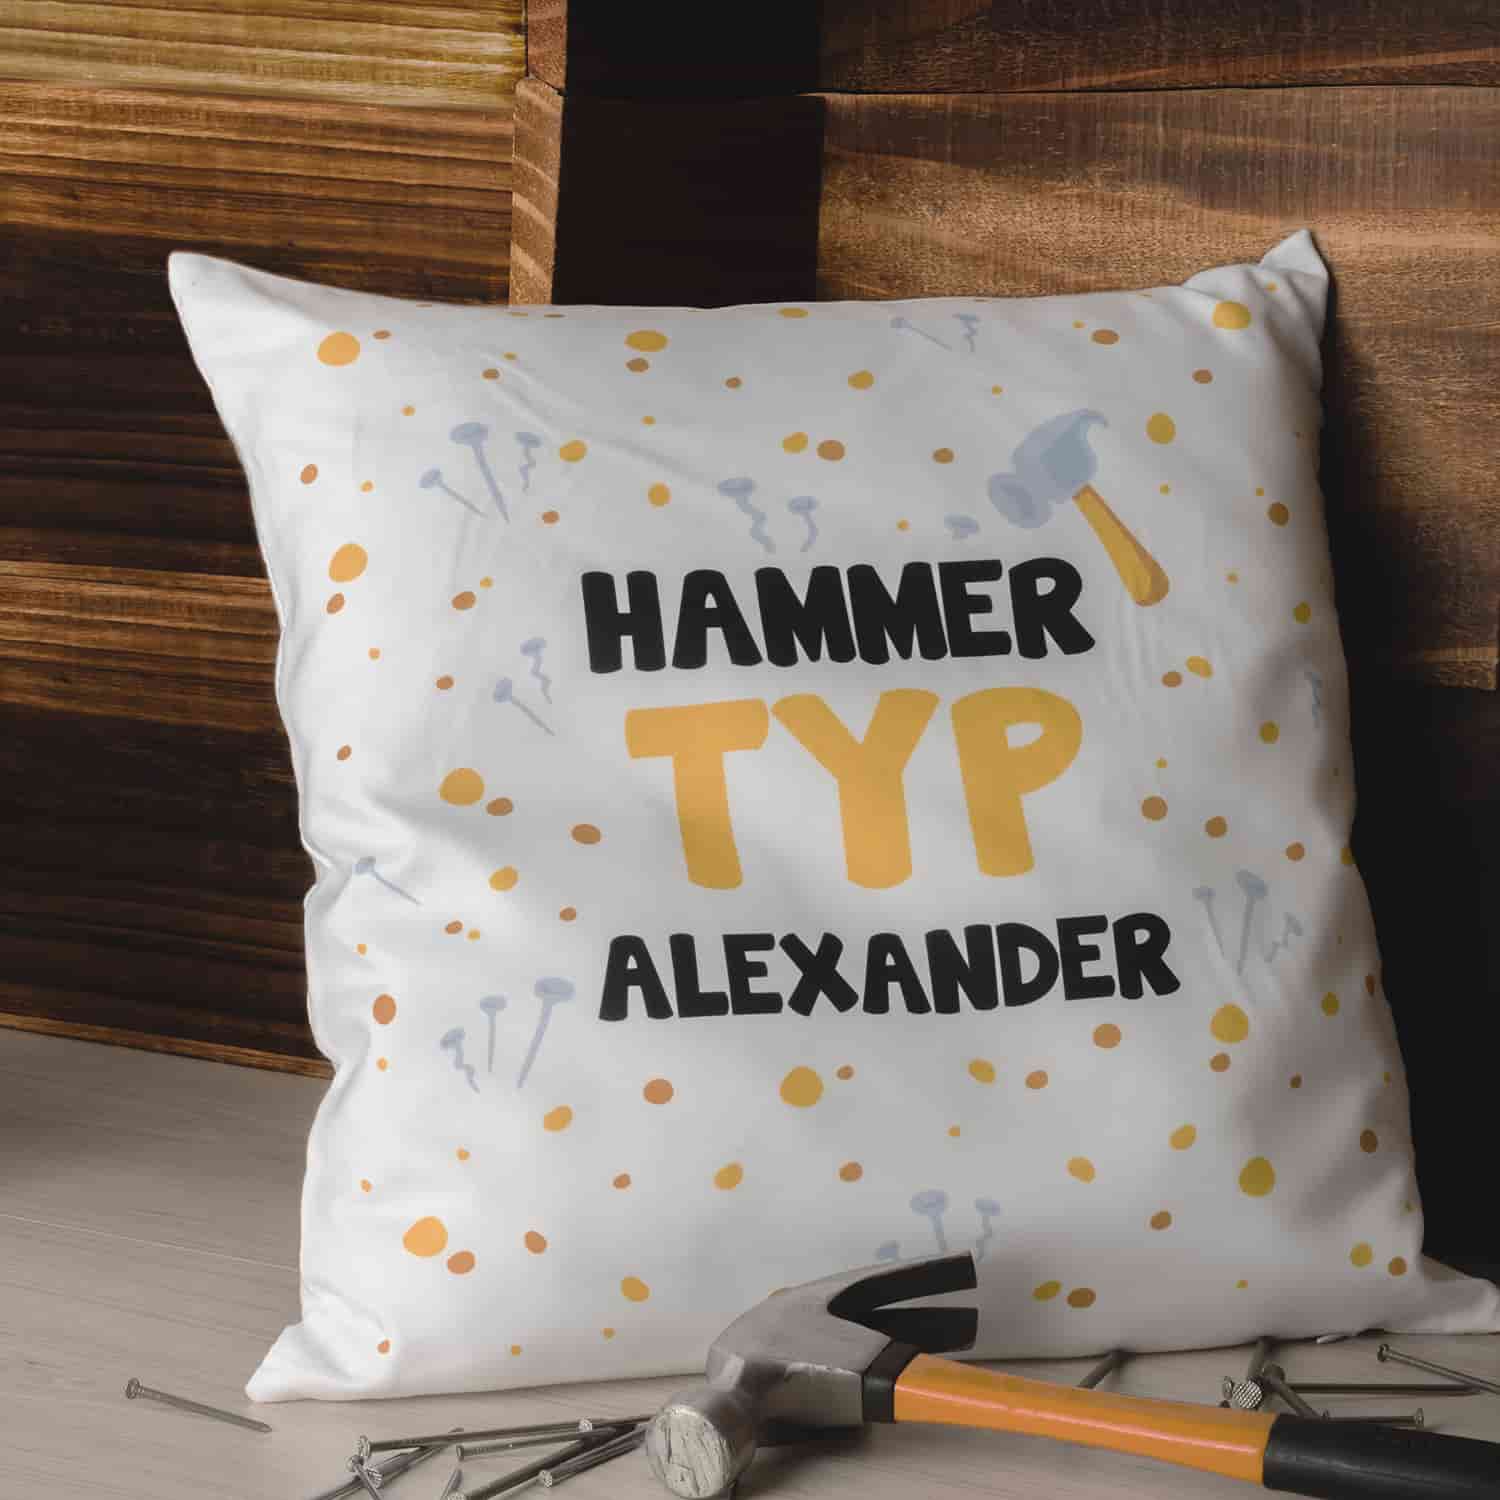 Personalisiertes Kissen mit dem Spruch "Hammer Typ" und dem Beispielsnamen "Alexander"